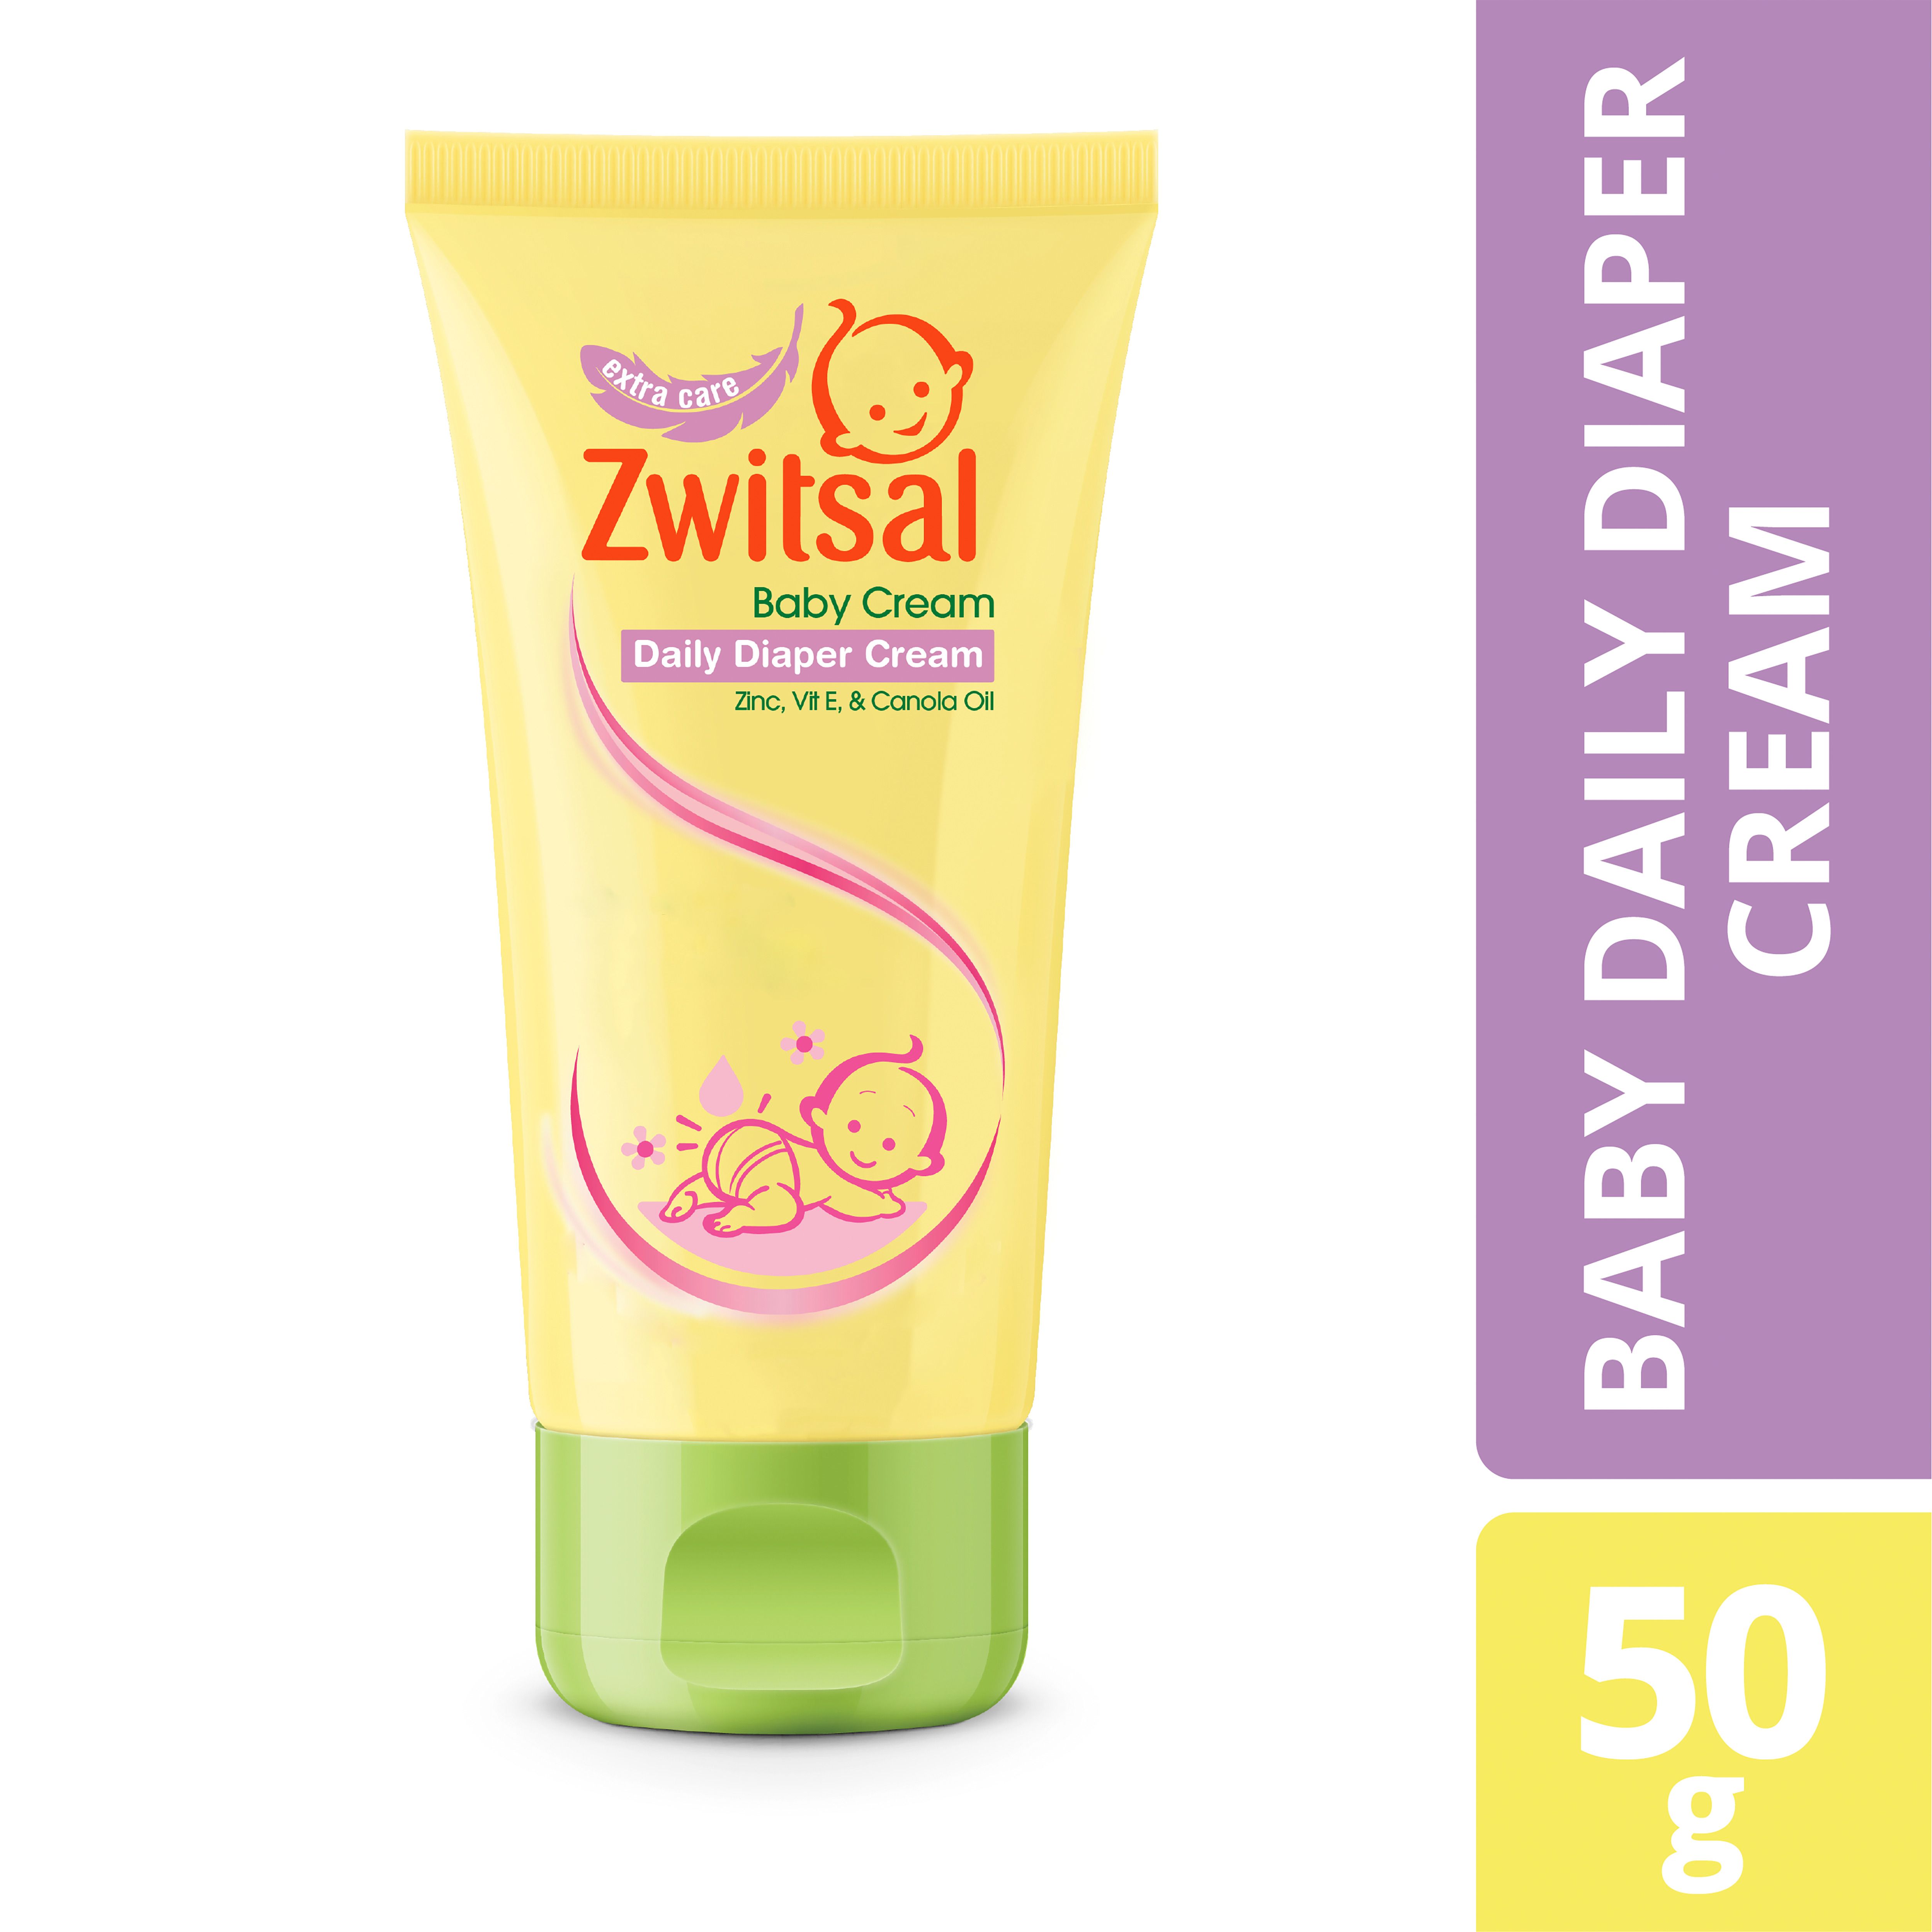 Zwitsal Daily Diaper Cream - 1